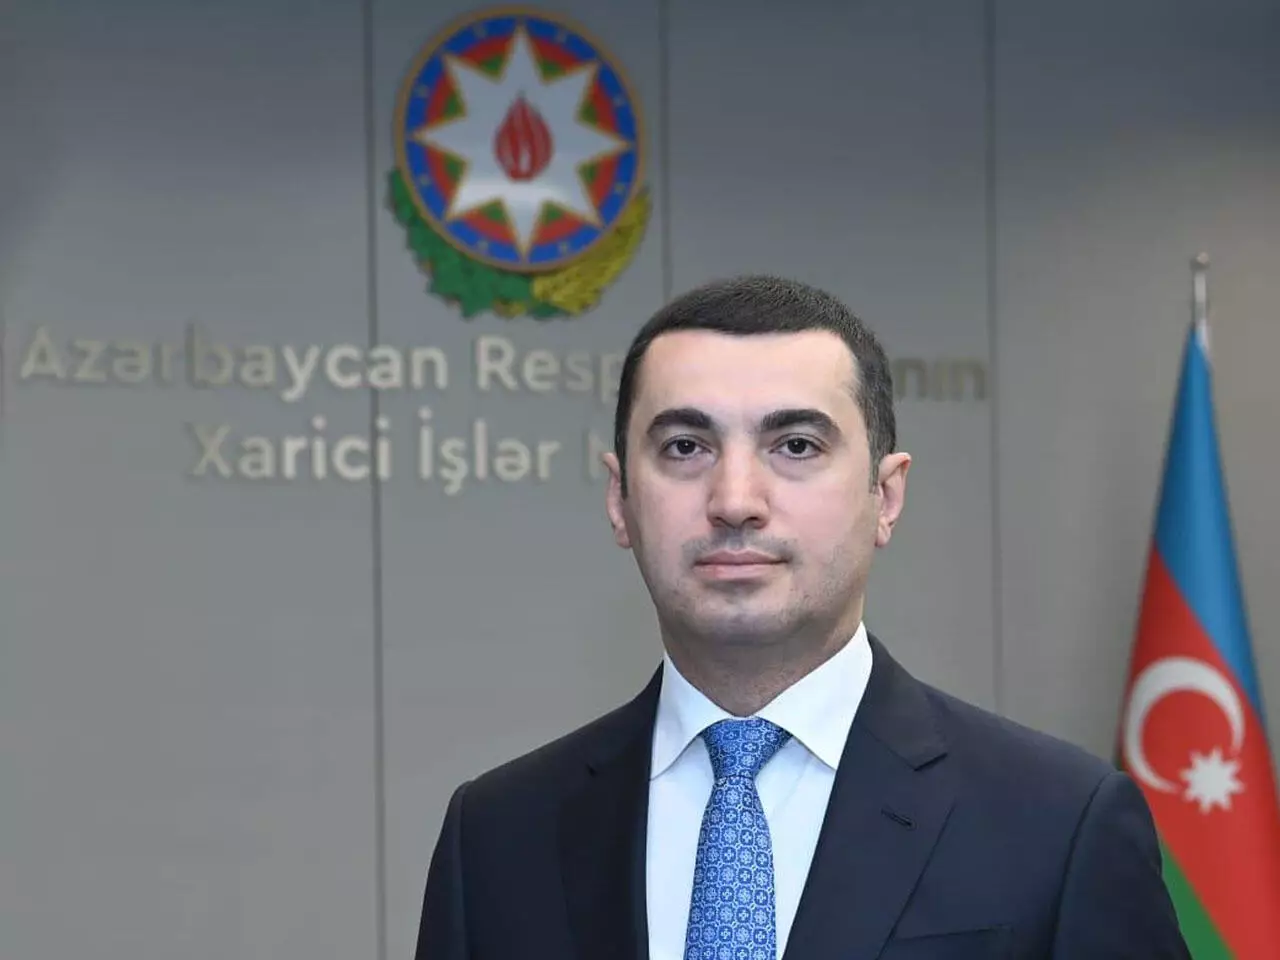 Azərbaycan XİN: "Ermənistanın hərəkətlərinin açıq şəkildə pislənməsini gözləyirik"